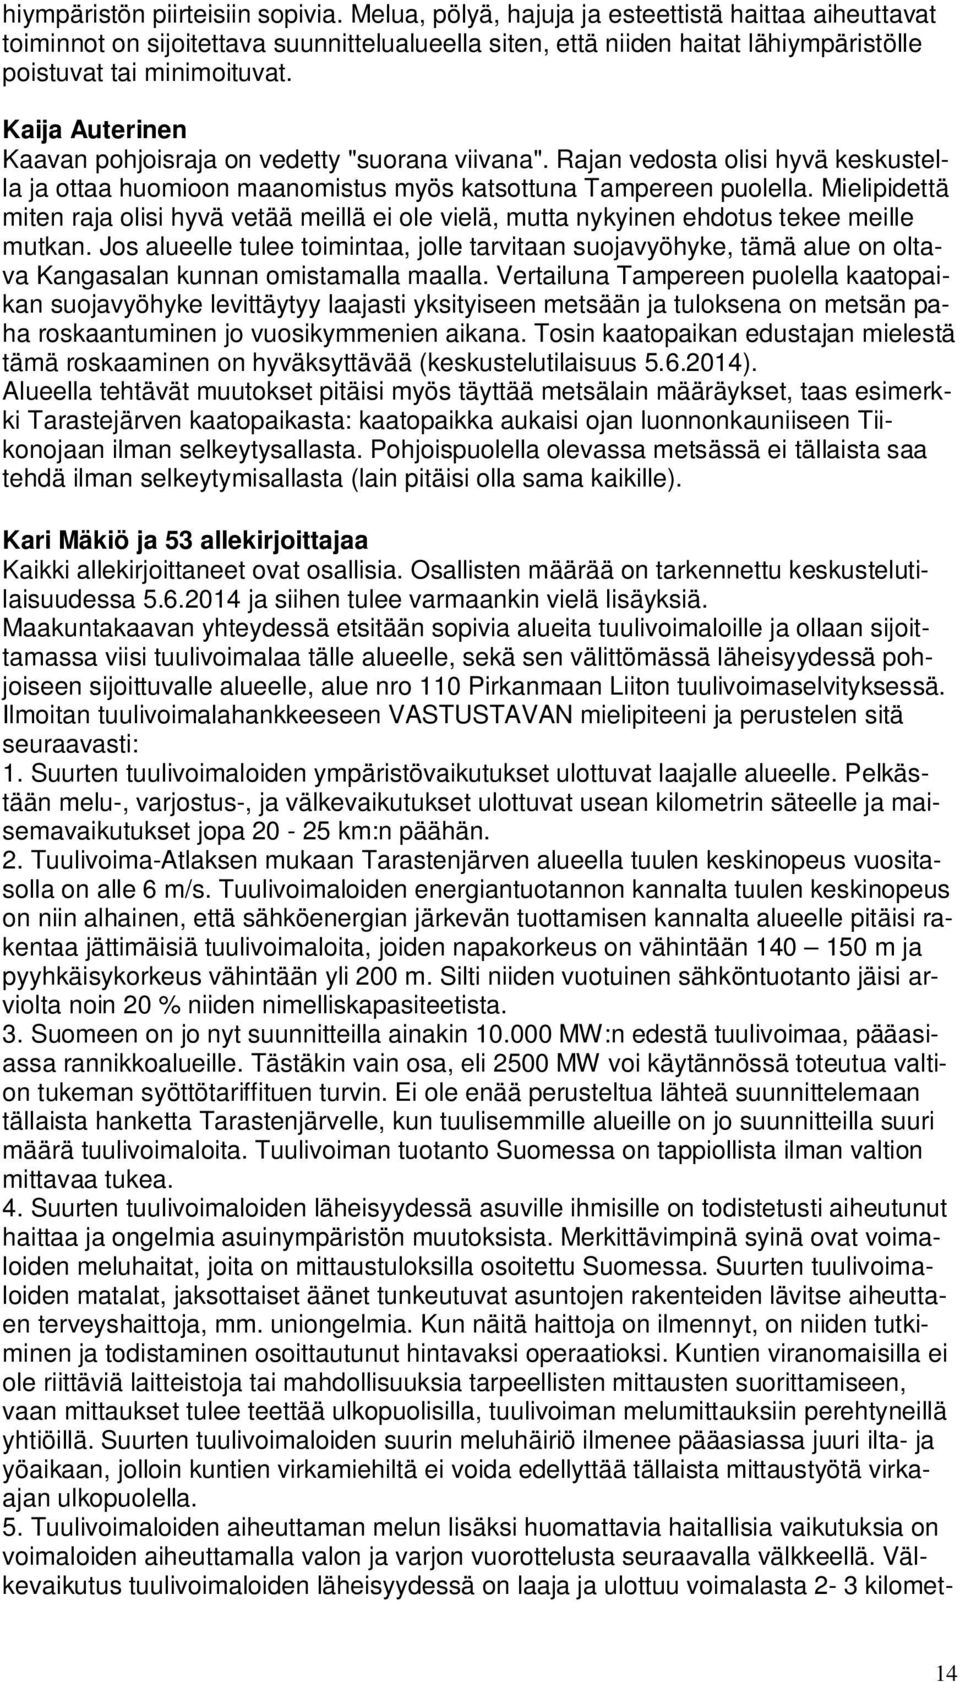 Kaija Auterinen Kaavan pohjoisraja on vedetty "suorana viivana". Rajan vedosta olisi hyvä keskustella ja ottaa huomioon maanomistus myös katsottuna Tampereen puolella.